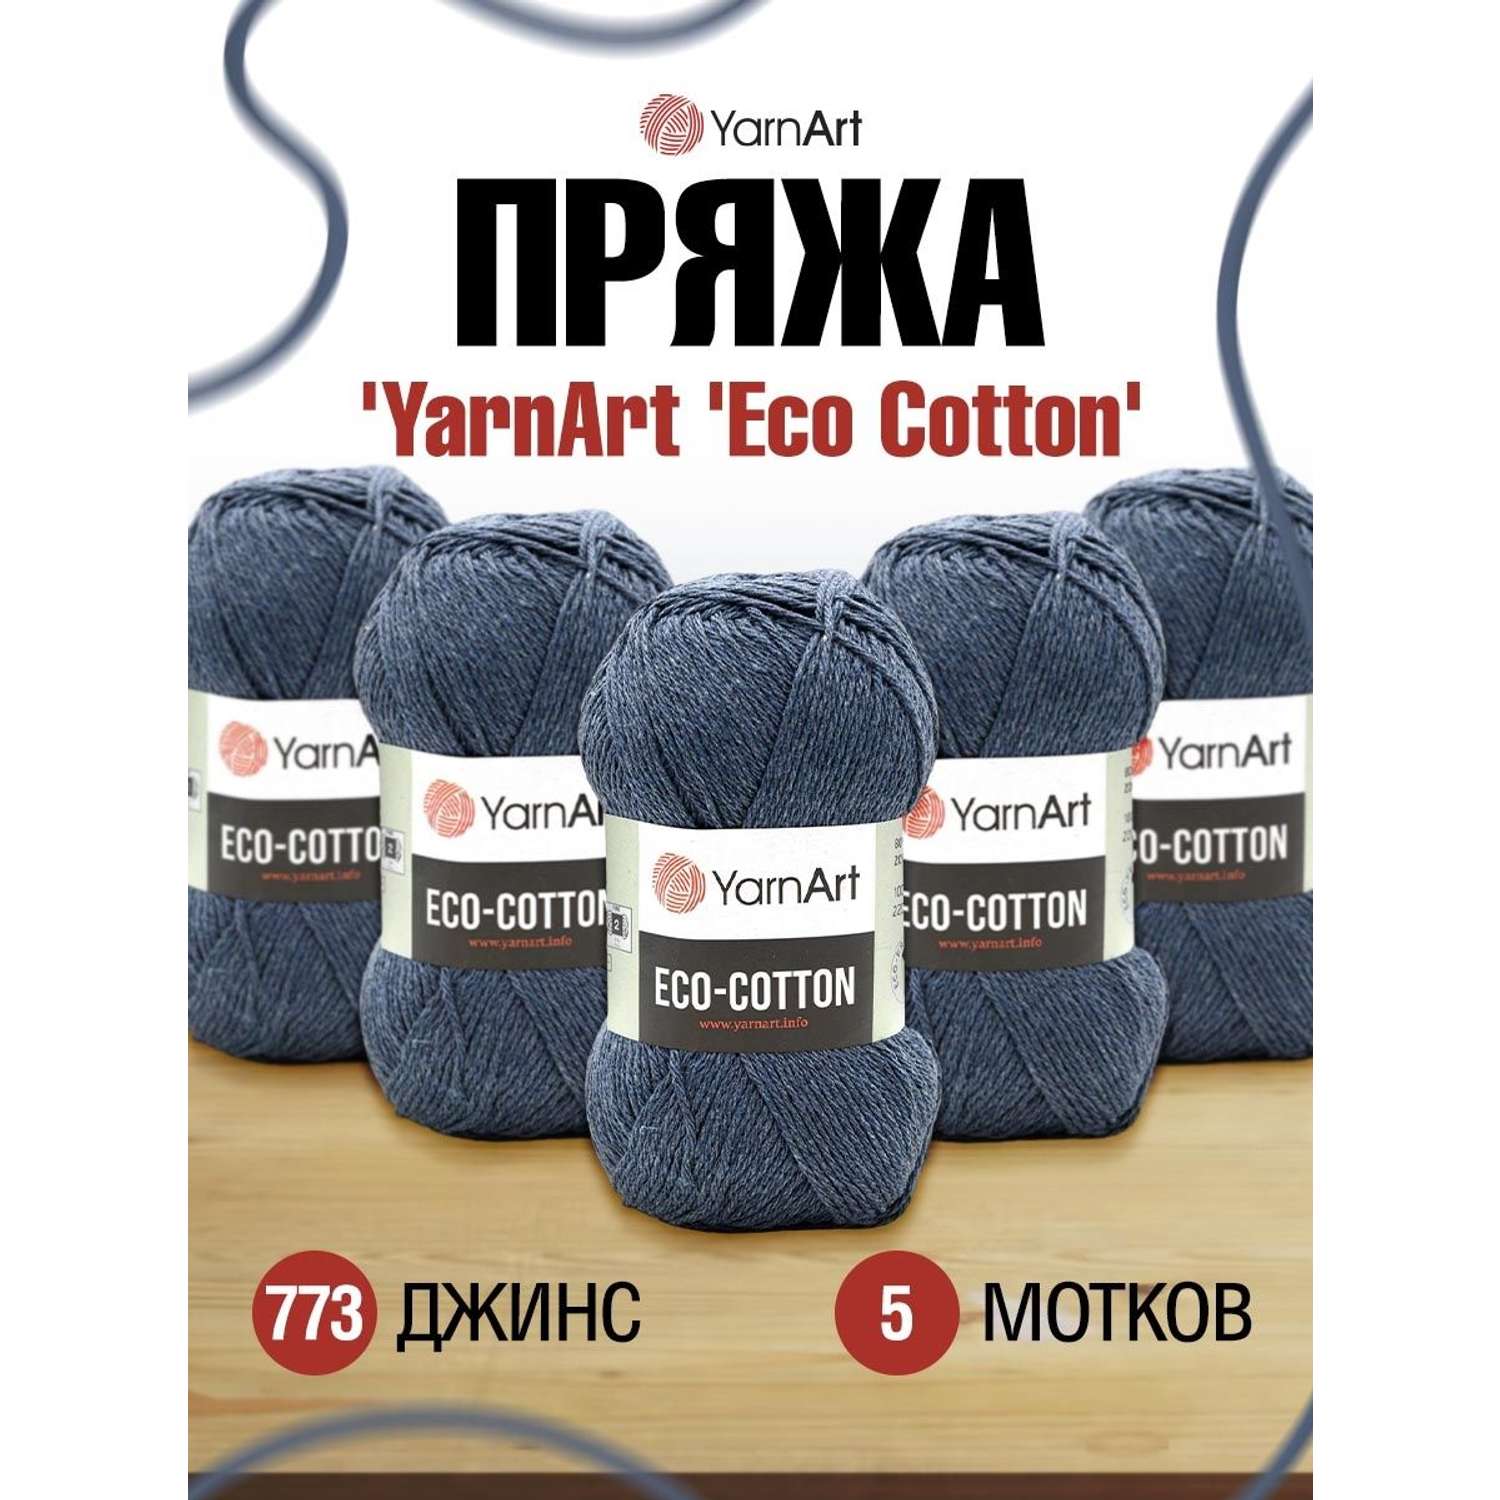 Пряжа YarnArt Eco Cotton комфортная для летних вещей 100 г 220 м 773 джинс 5 мотков - фото 1